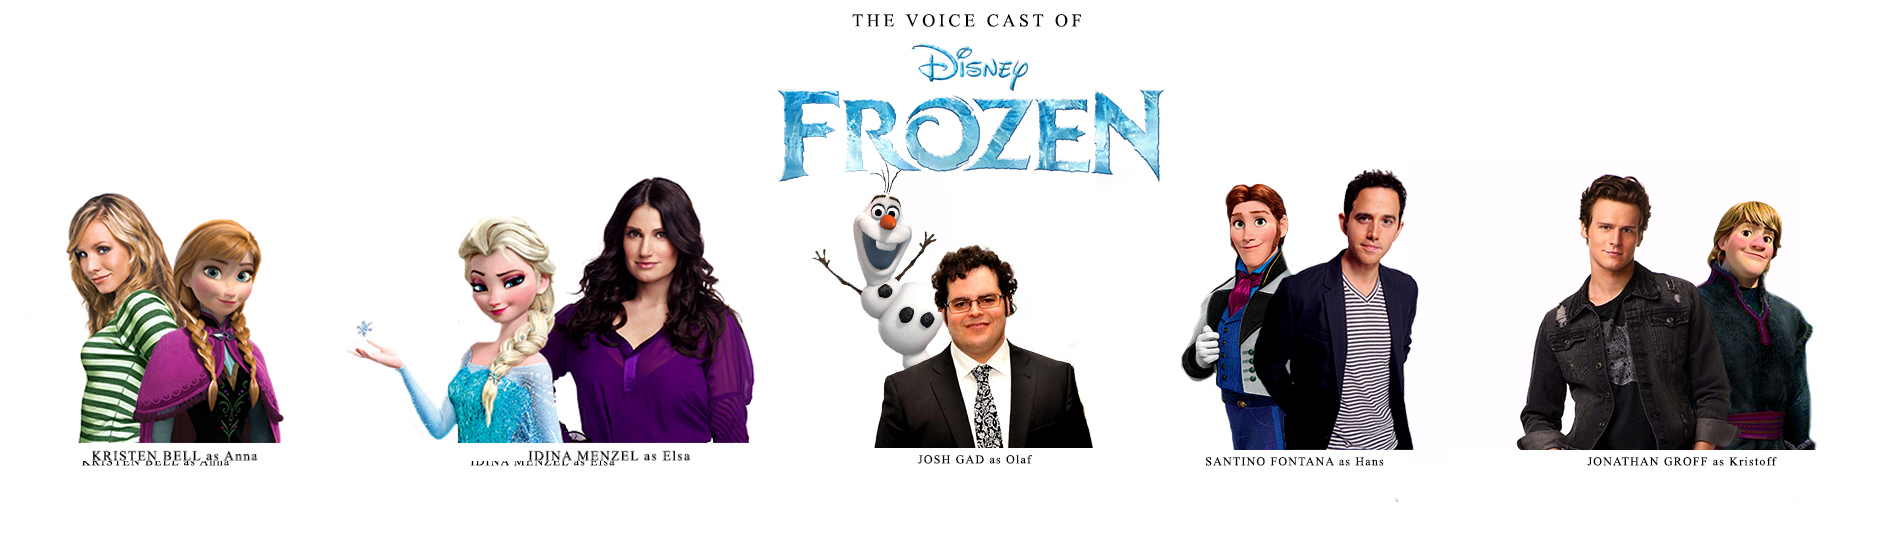 Semua pengisi suara asli akan kembali untuk mengisi masing-masing karakter Frozen.